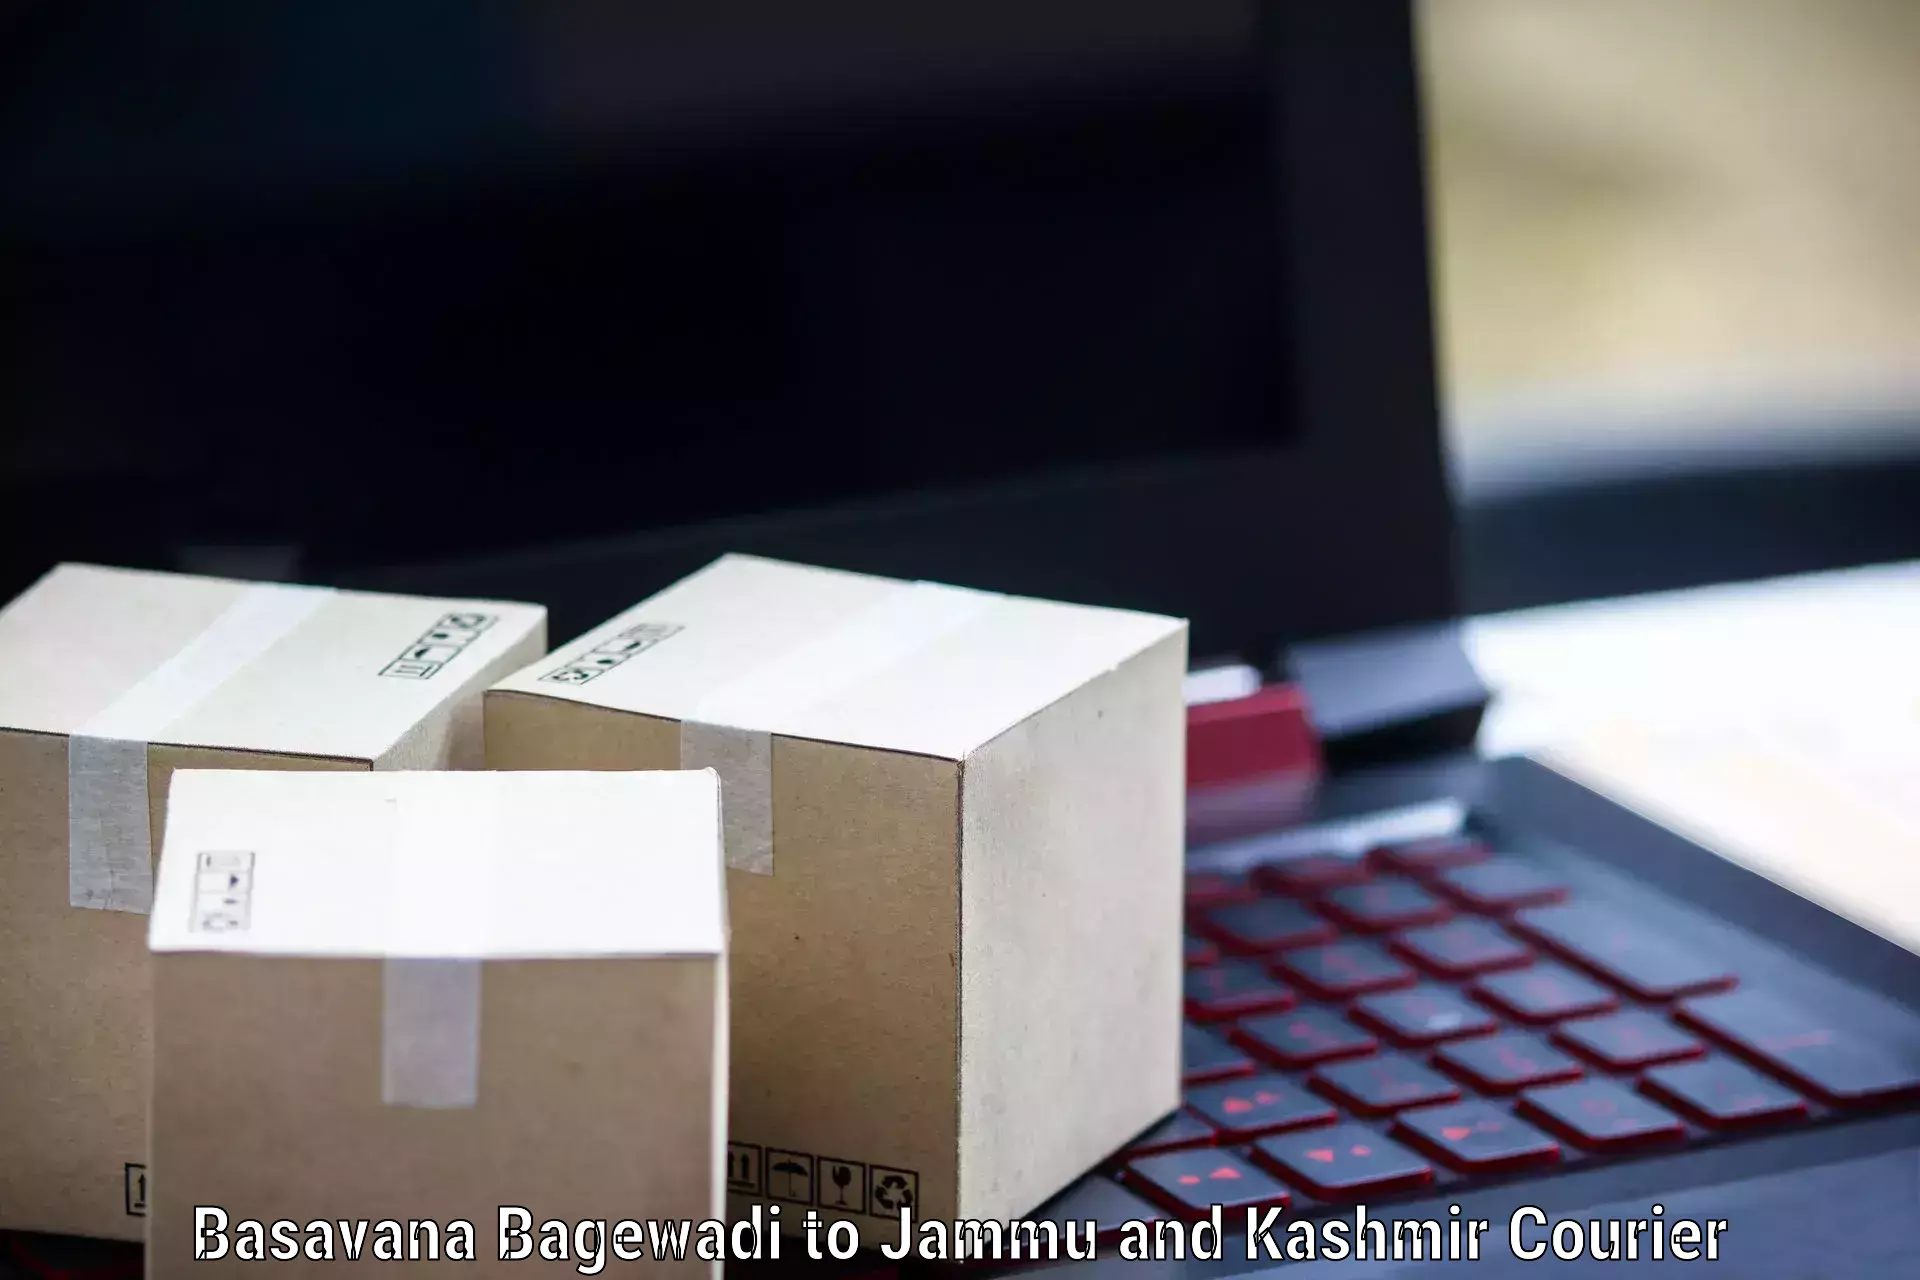 Modern courier technology Basavana Bagewadi to Srinagar Kashmir